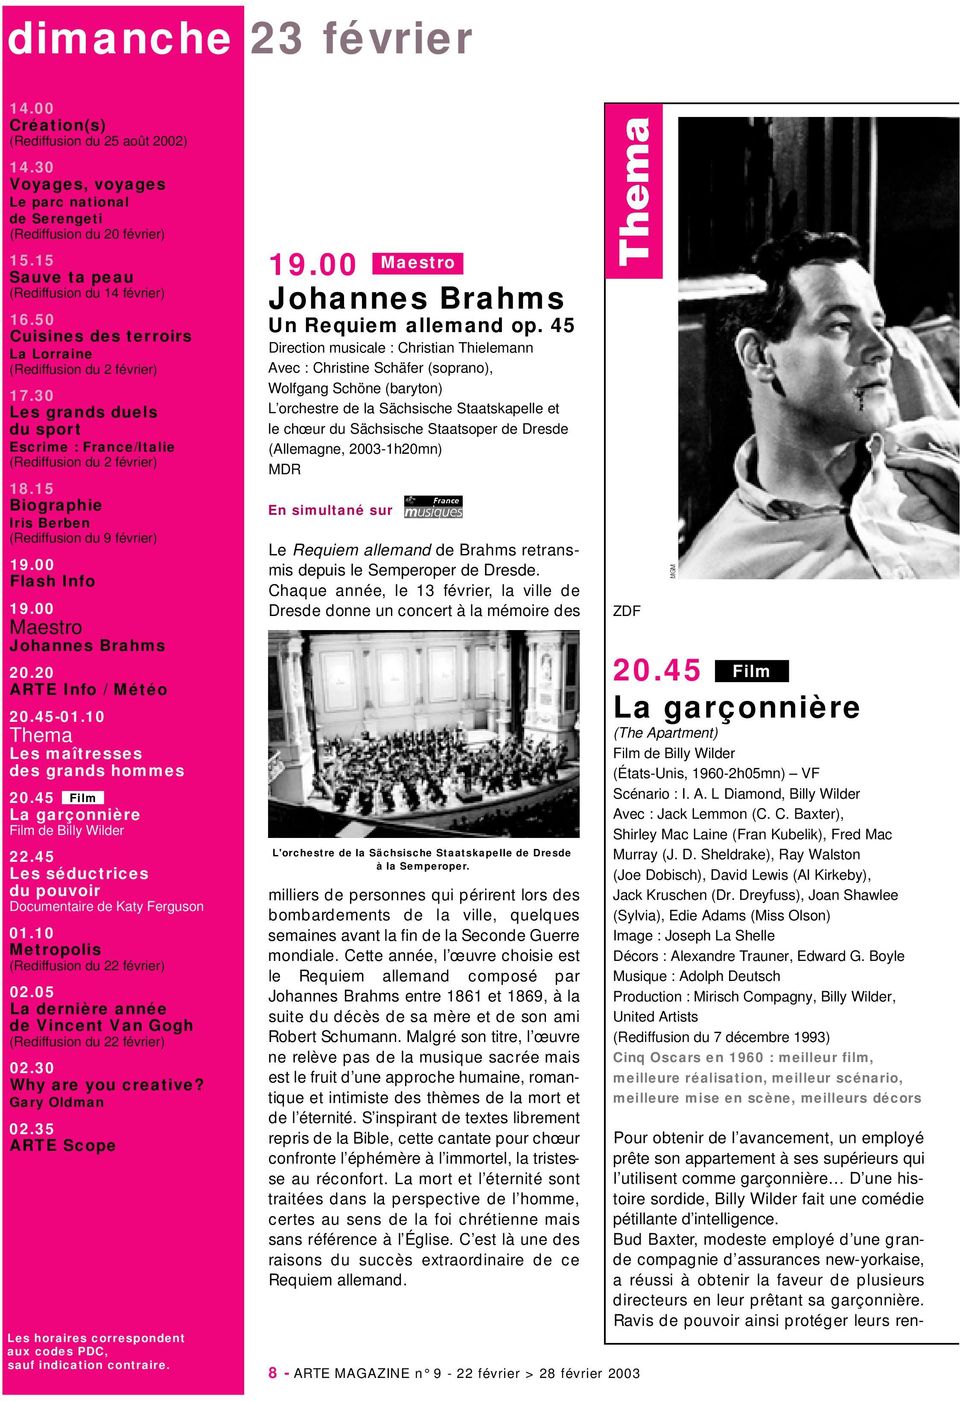 15 Biographie Iris Berben (Rediffusion du 9 février) Flash Info Maestro Johannes Brahms 20.20 ARTE Info / Météo 20.45-01.10 Thema Les maîtresses des grands hommes 20.